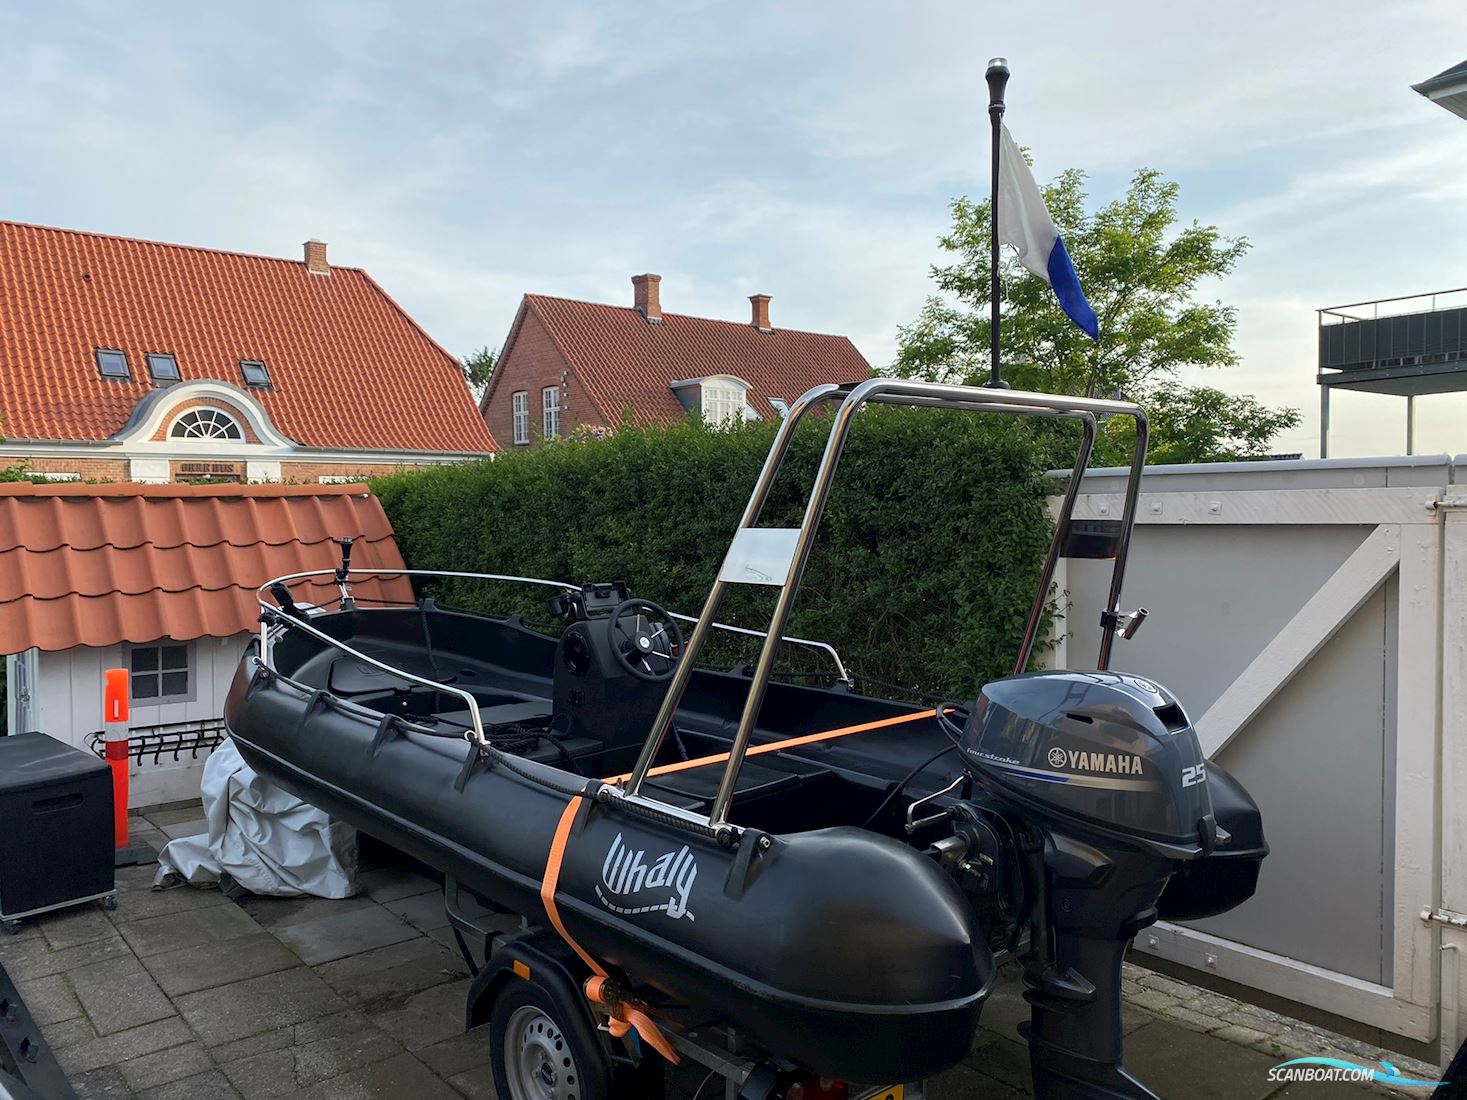 Whaly 435 Sportsboot 2019, mit Yamaha motor, Dänemark